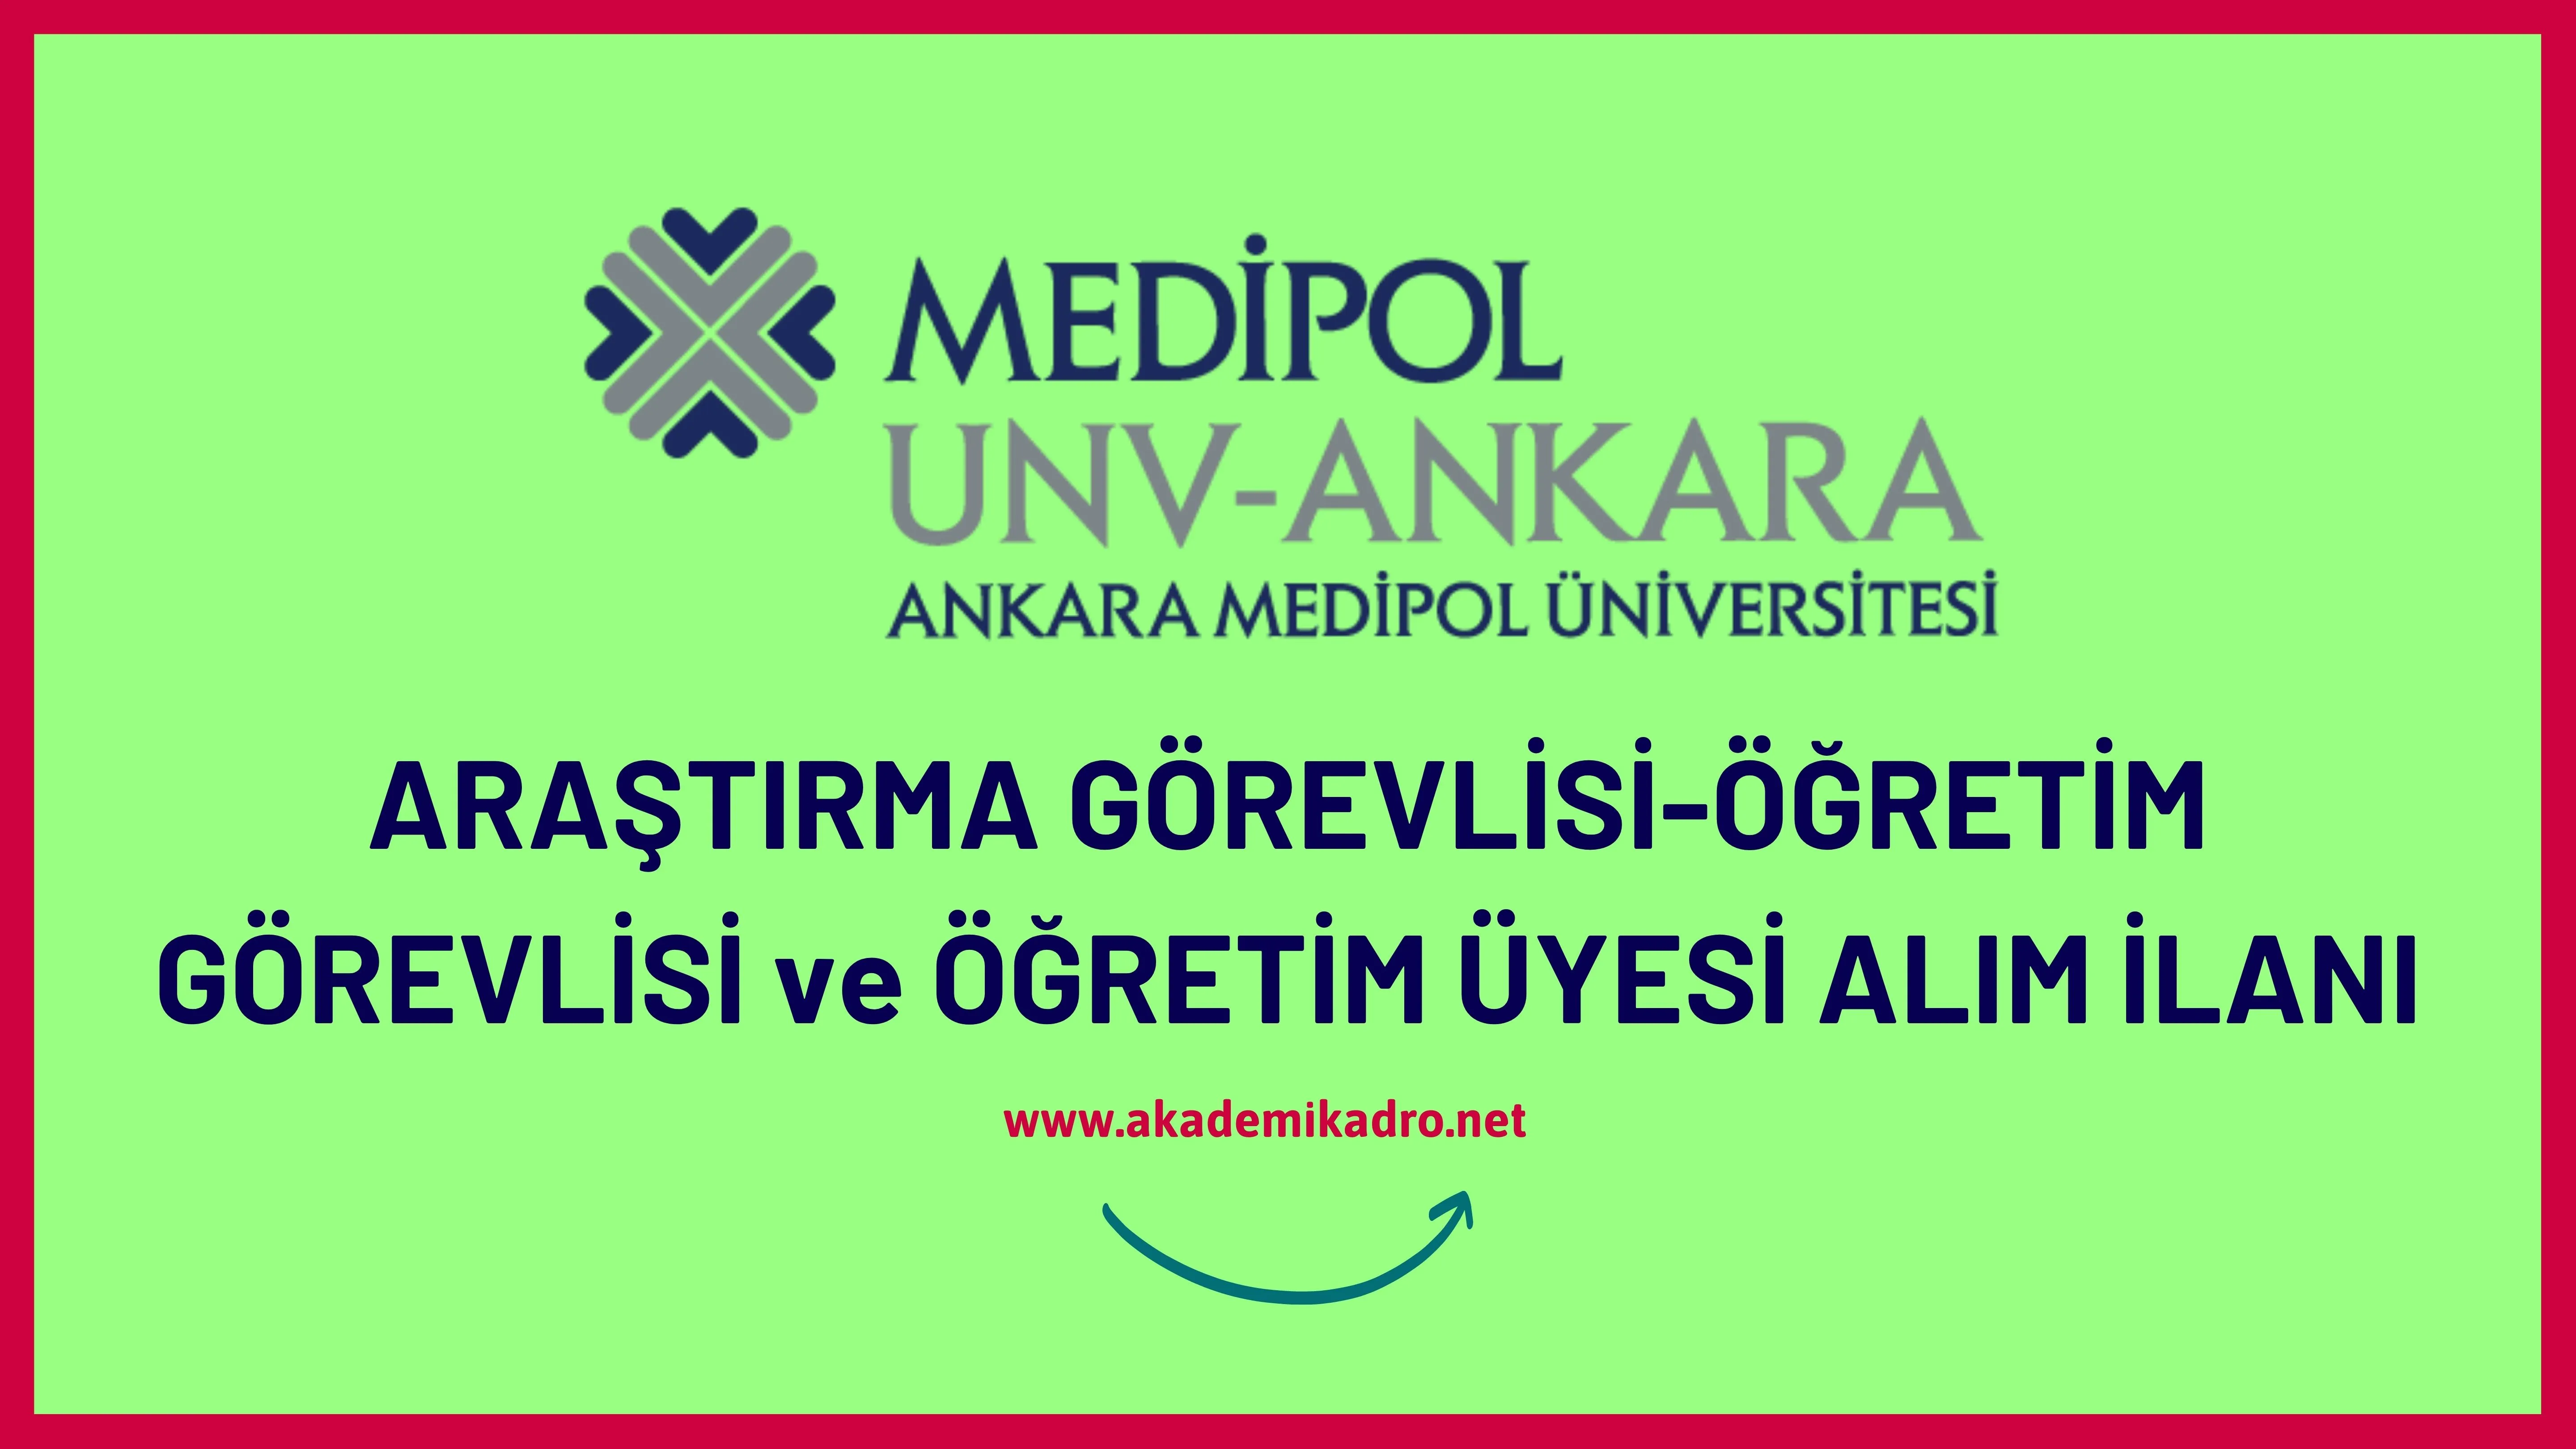 Ankara Medipol Üniversitesi 2 Araştırma görevlisi ve öğretim üyesi alacaktır.